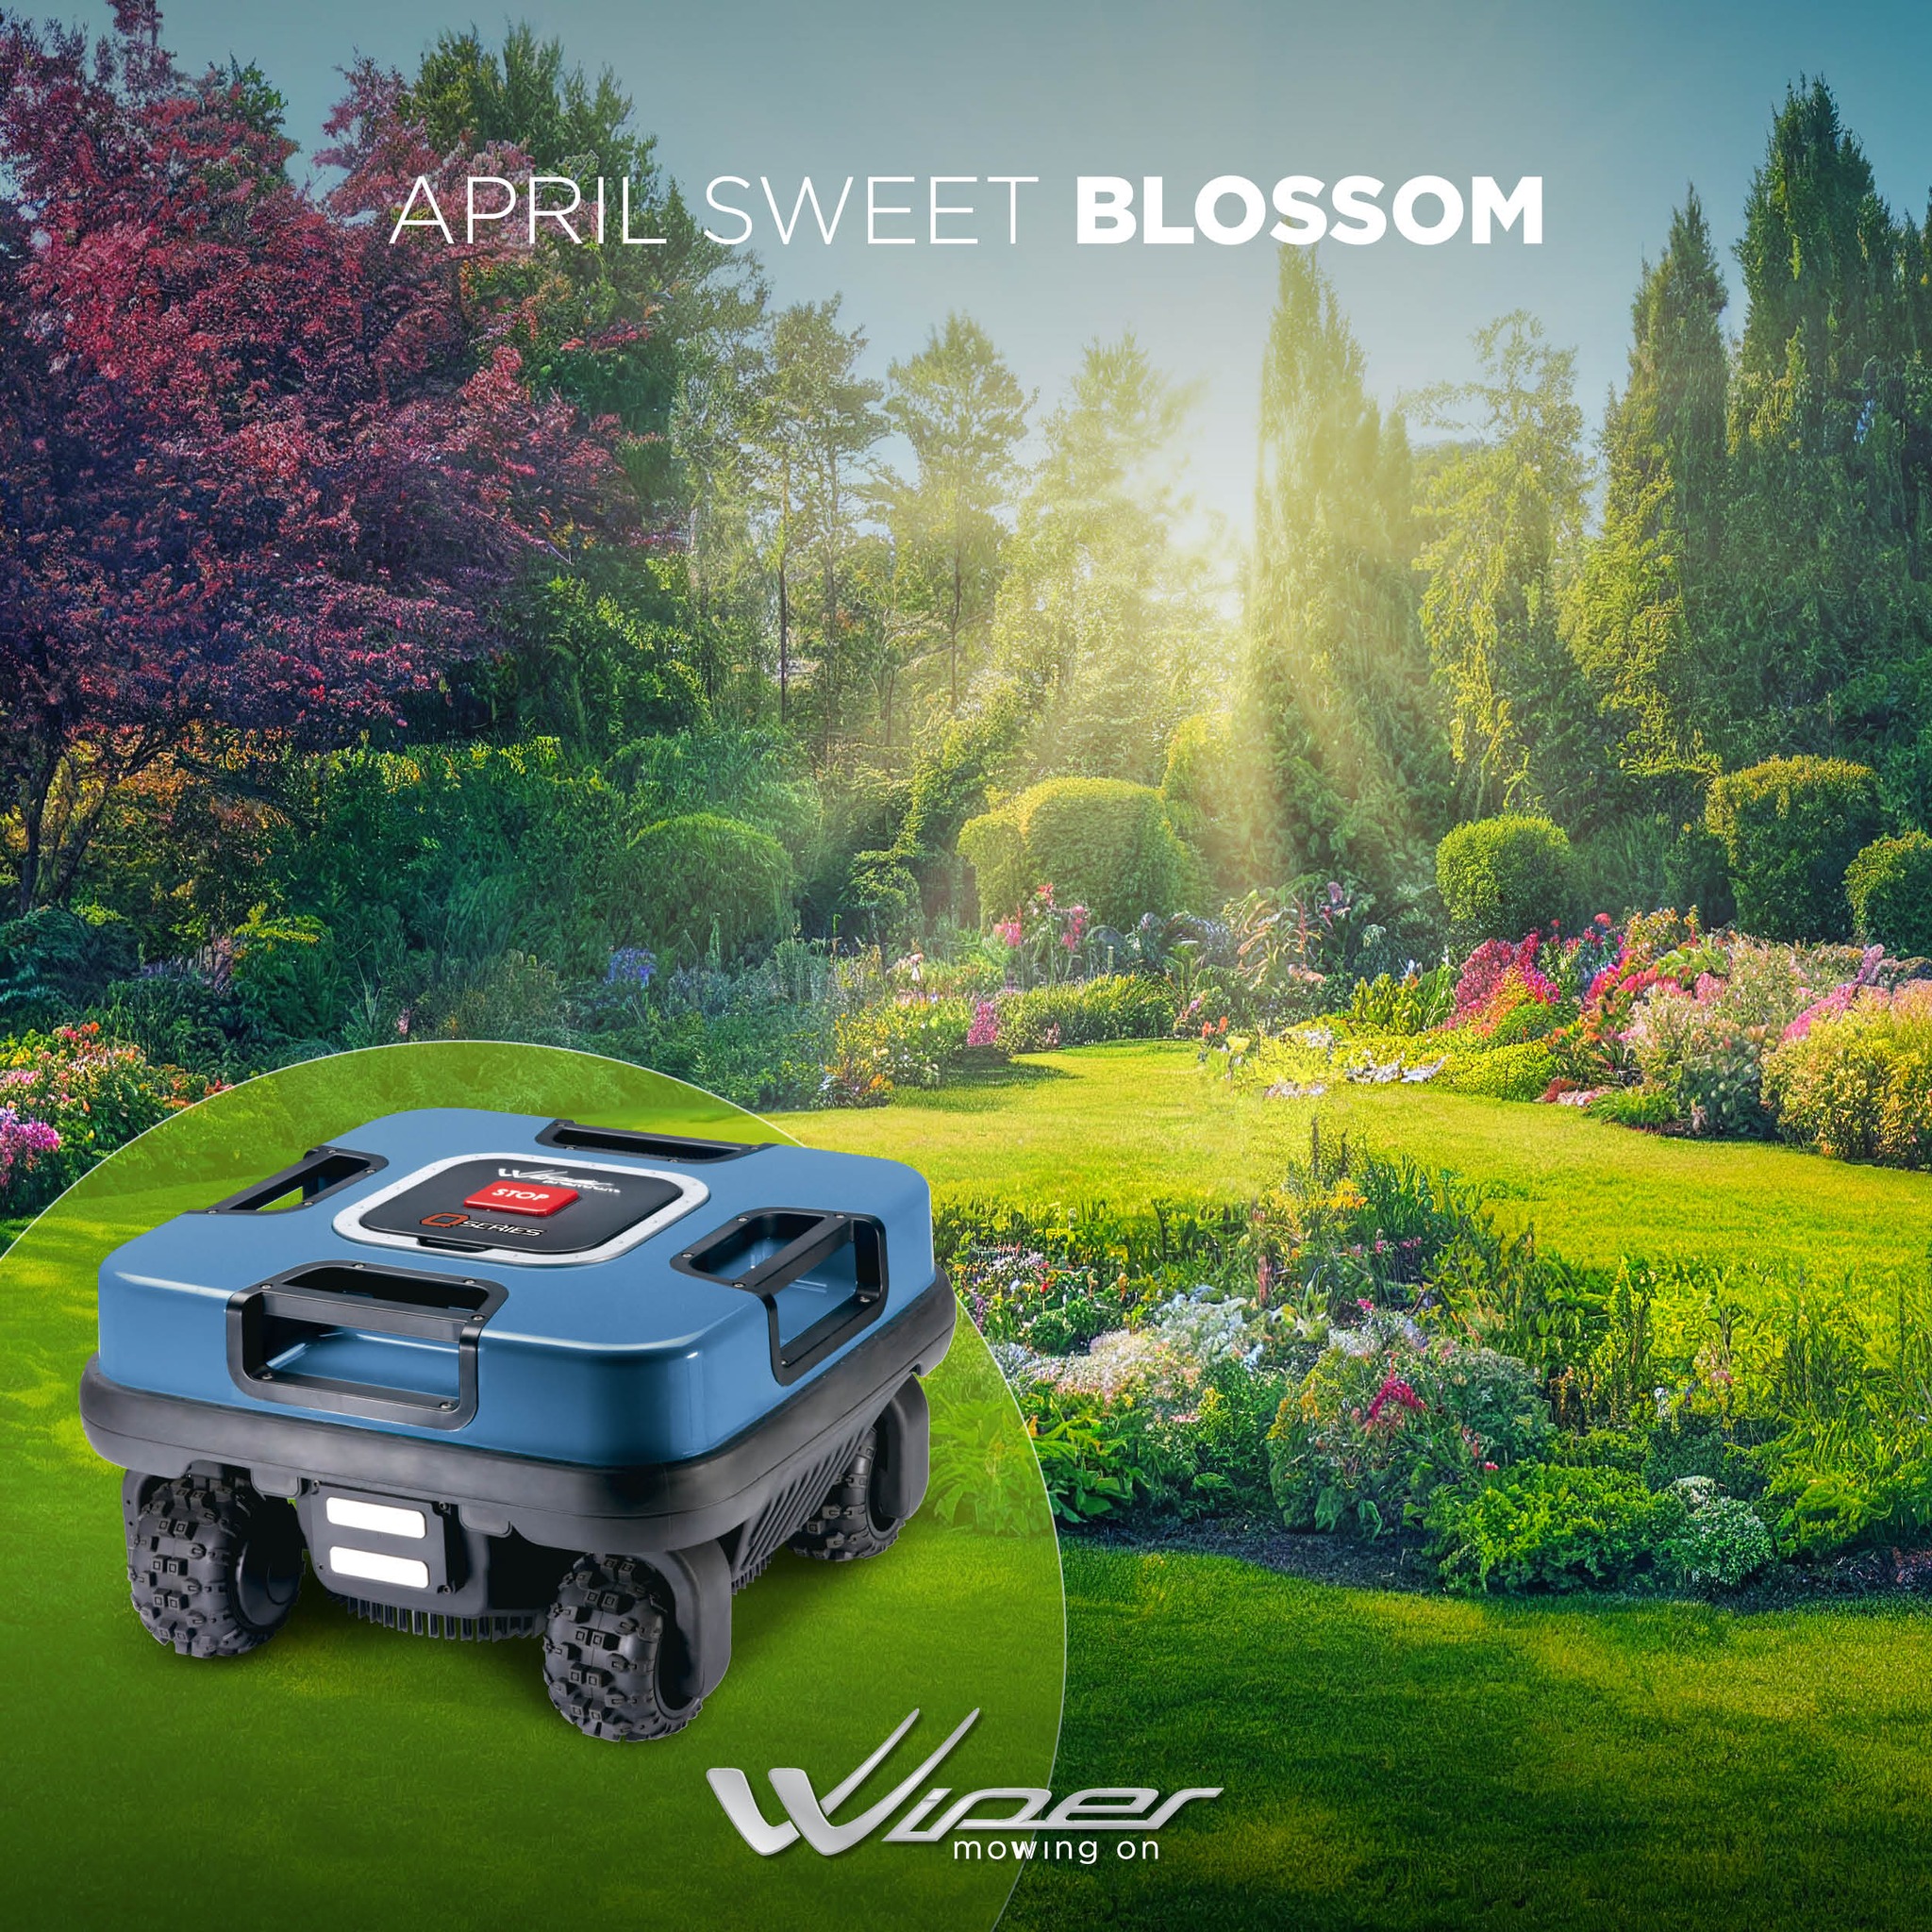 Jak zadbać o trawnik na wiosnę z pomocą robotów koszących